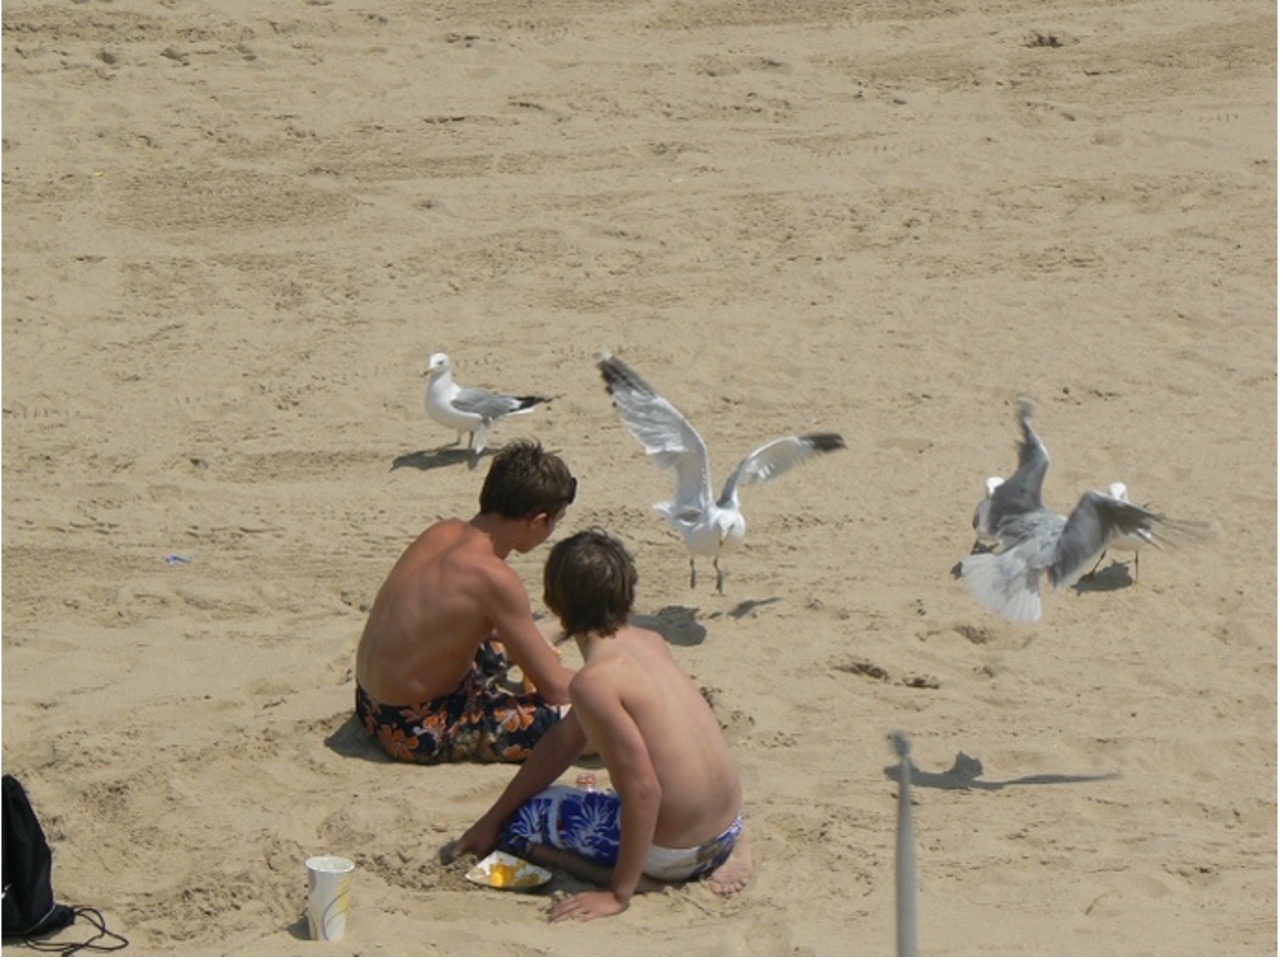 Birds attacking beachgoers